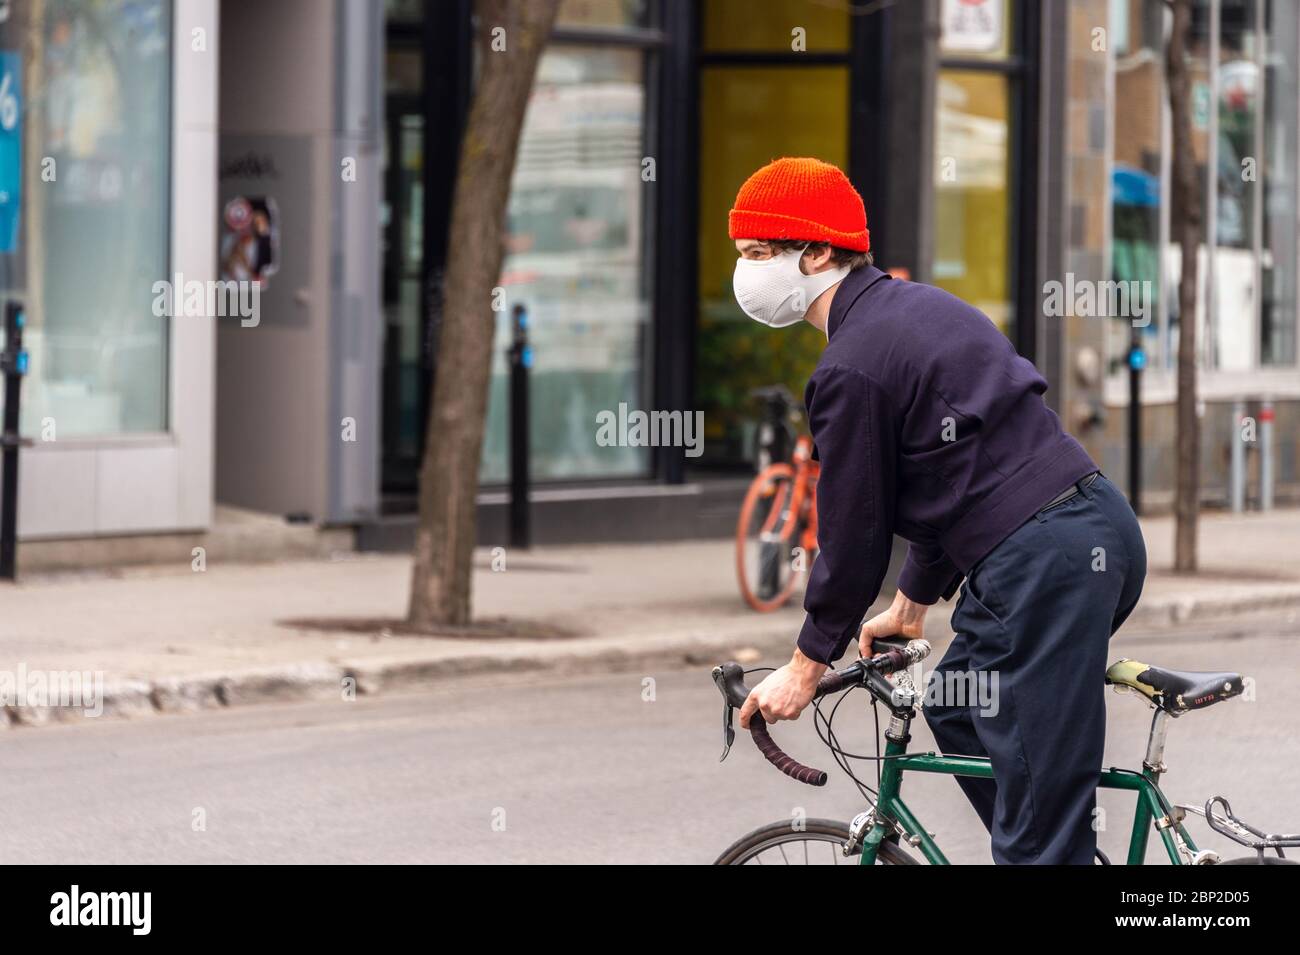 Montreal, CA - 16 maggio 2020: Un giovane con una maschera a cavallo di una bicicletta durante la pandemia del coronavirus COVID-19 su Mont-Royal Avenue. Foto Stock